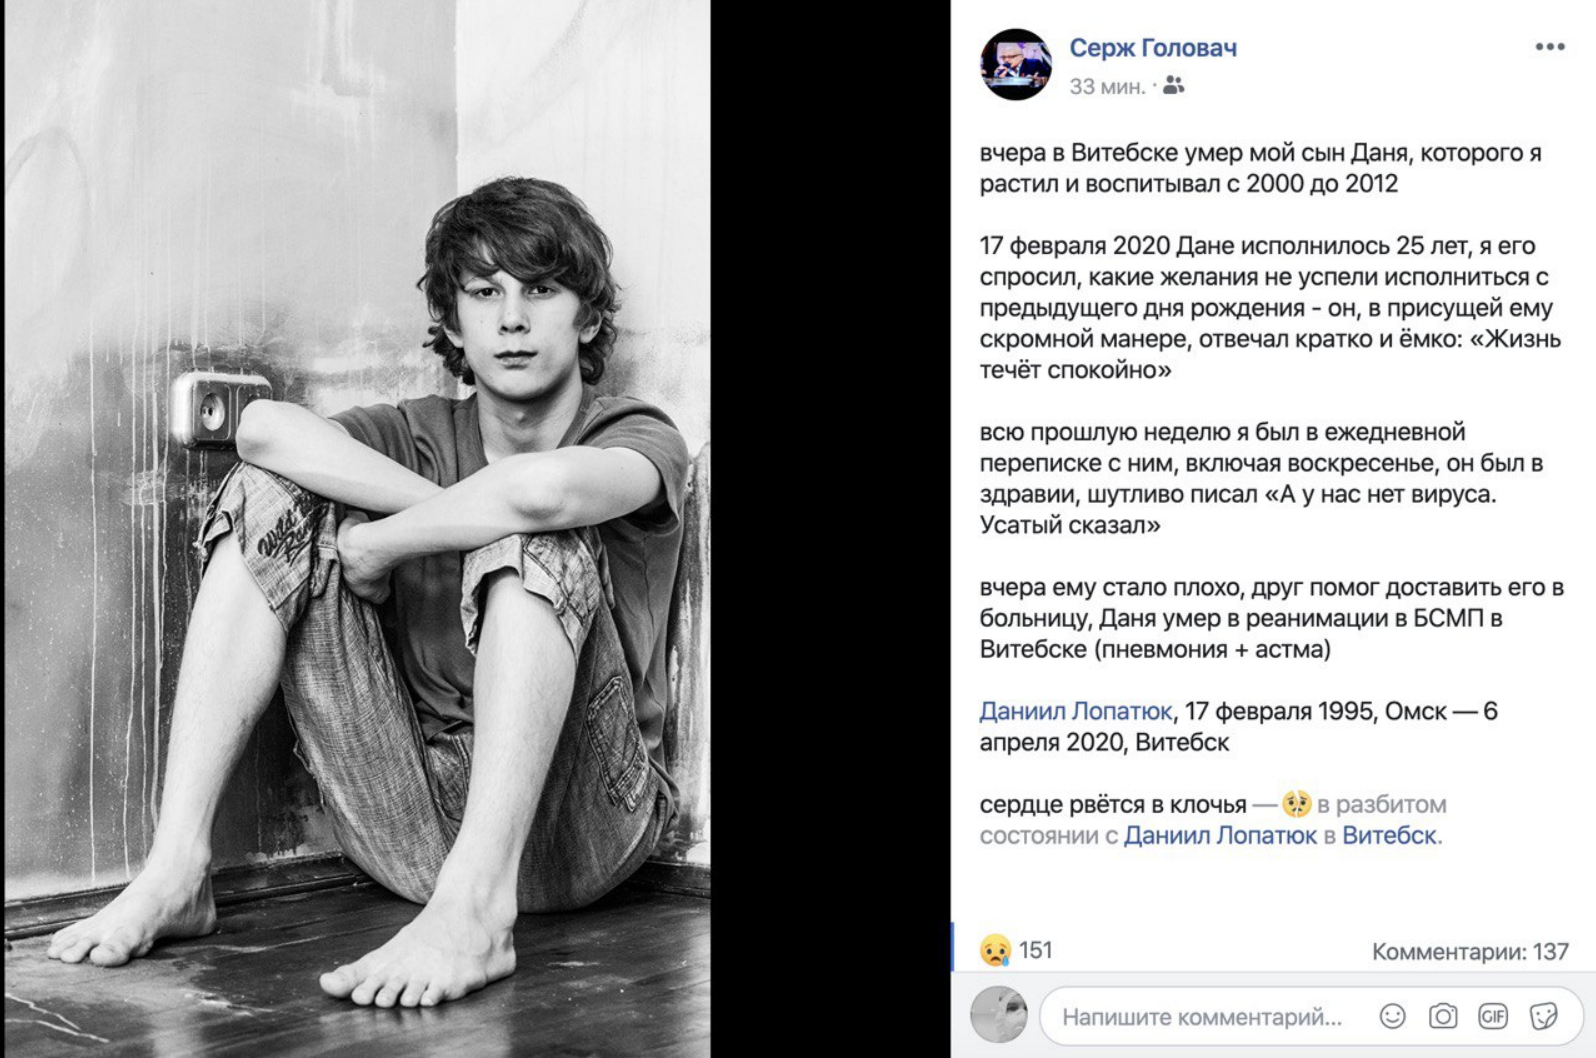 Российская пропаганда нашла очередного "распятого мальчика" в Витебске